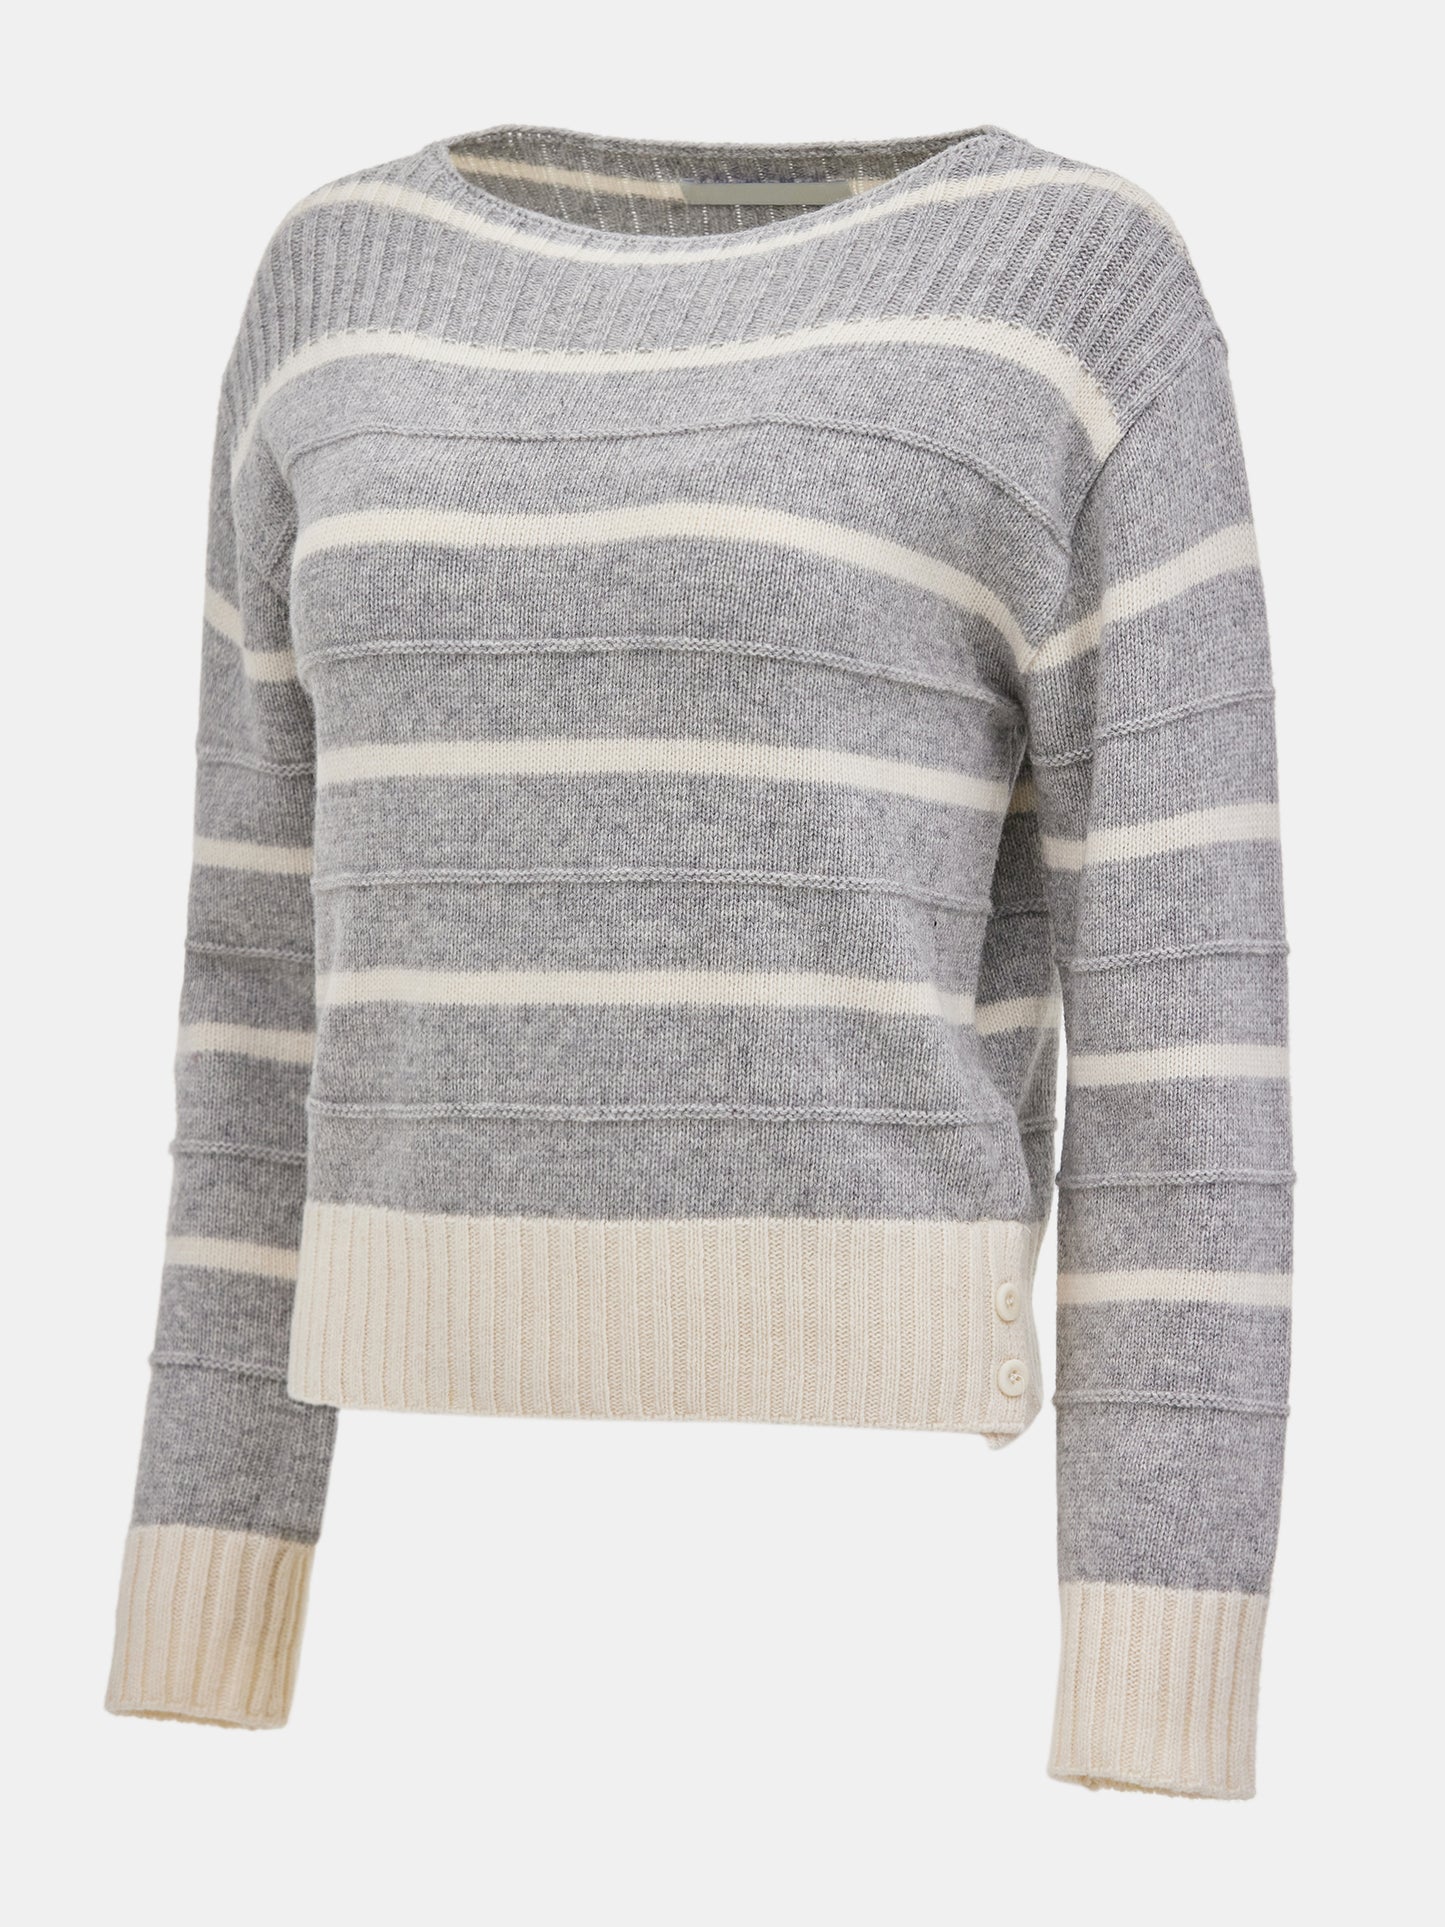 Fine Wool Stripe Knit, Grey/Ivory